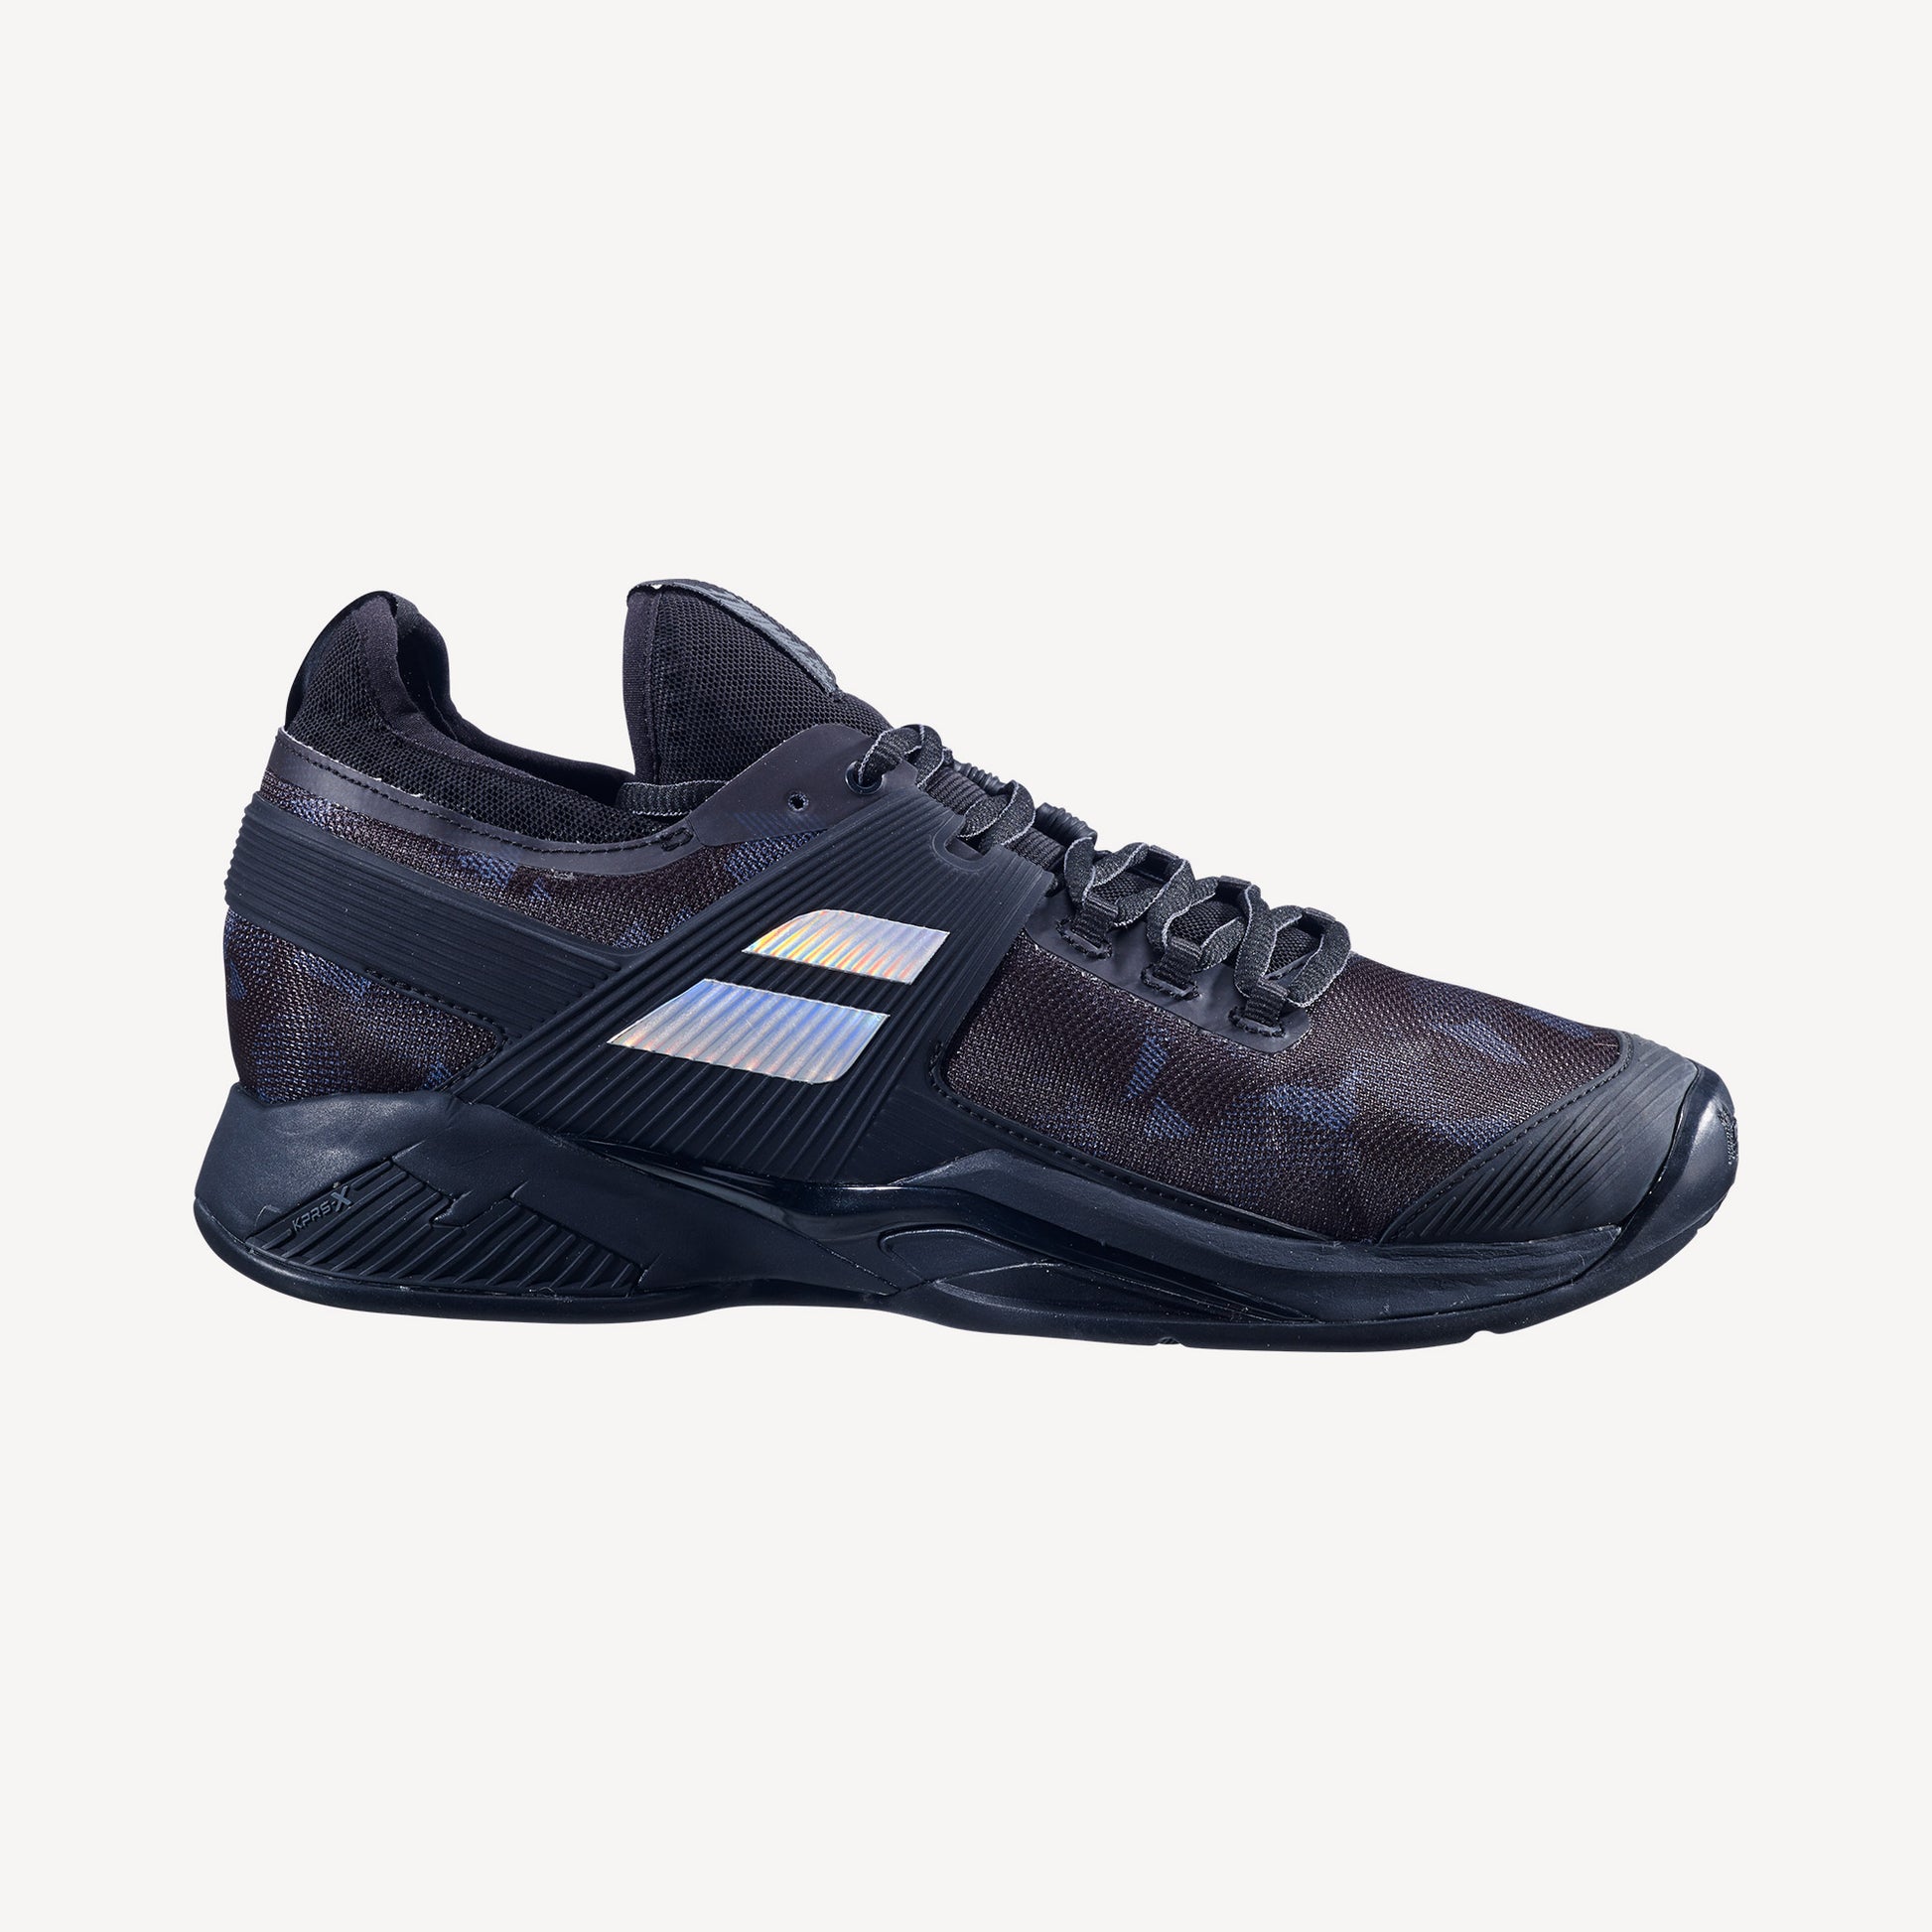 Babolat Propulse Rage Men's Clay Court Tennis Shoes Black (1)